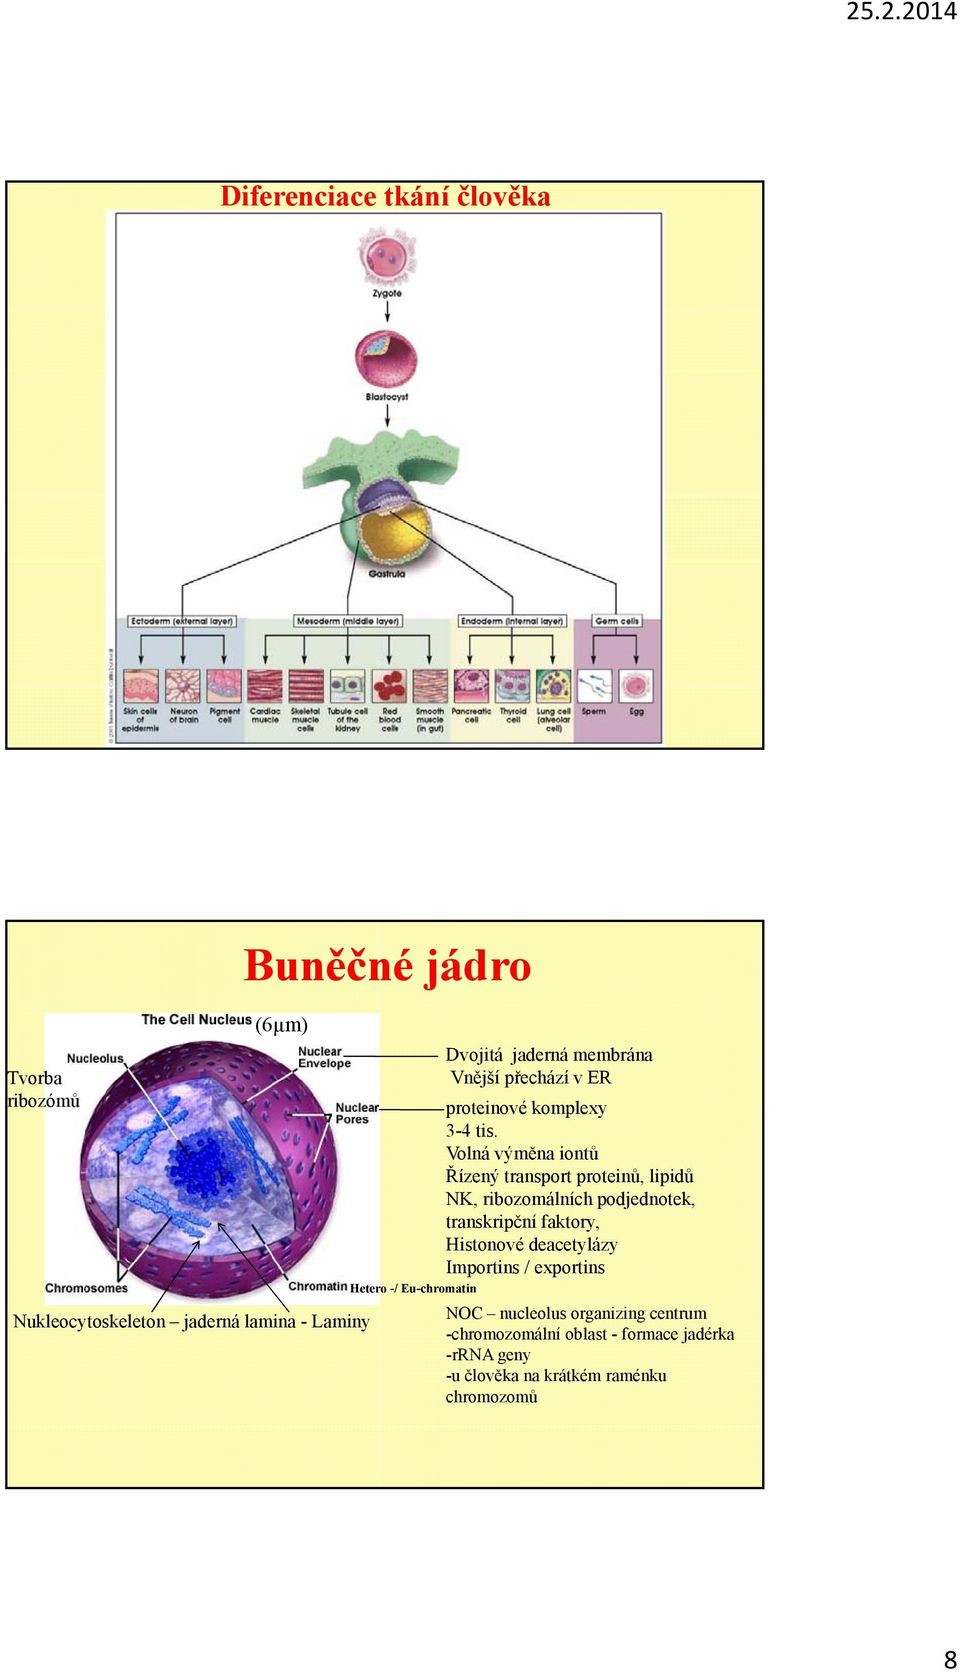 Volná výměna iontů Řízený transport proteinů, lipidů NK, ribozomálních podjednotek, transkripční faktory, Histonové